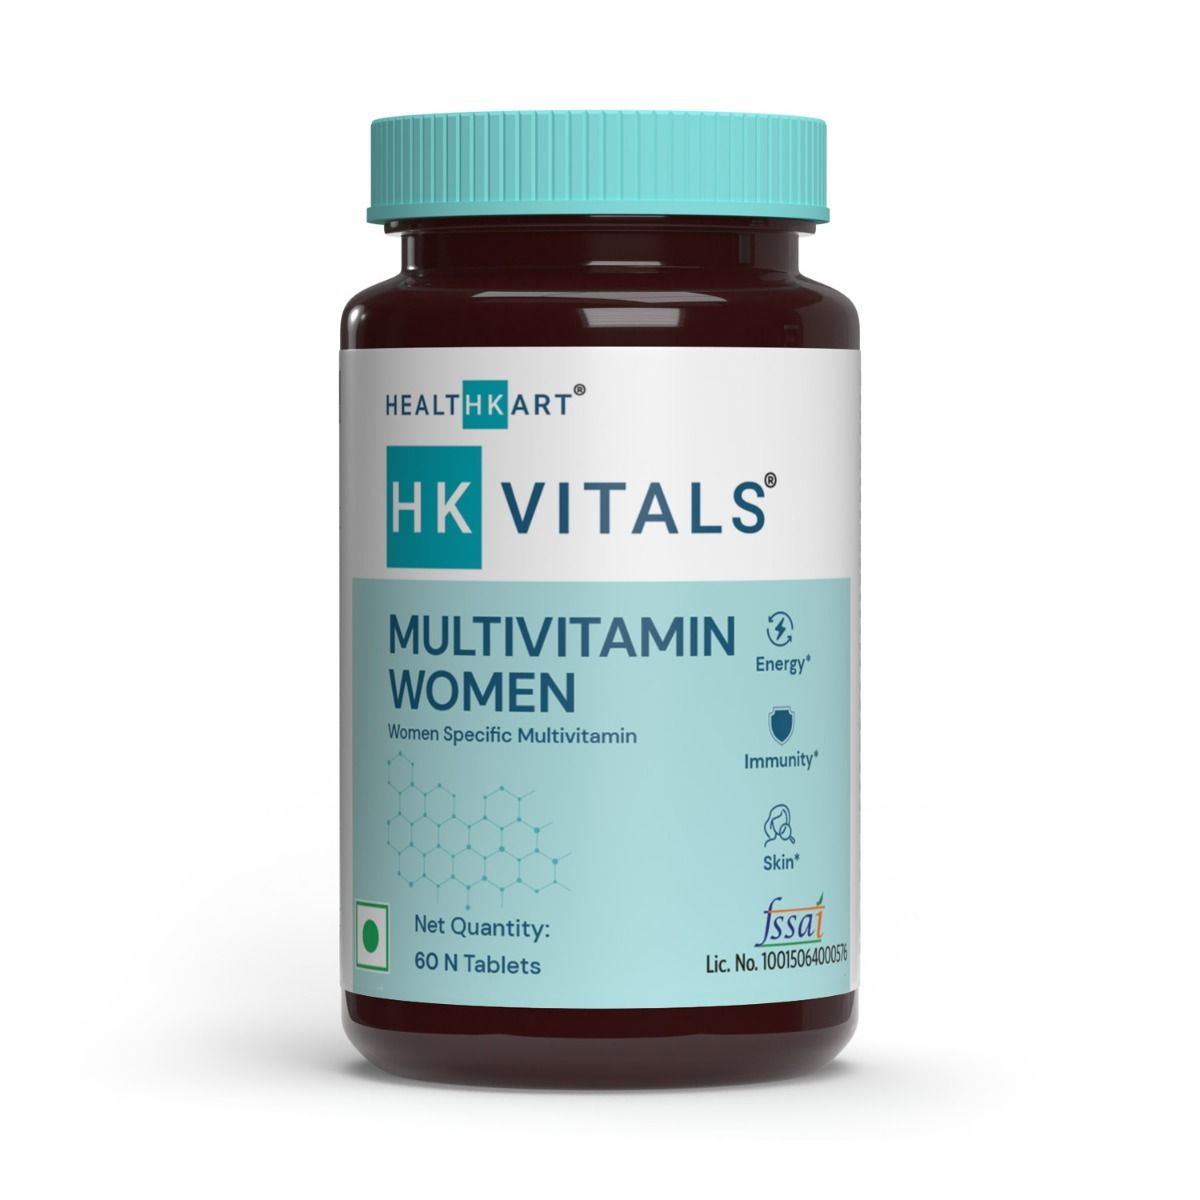 HealthKart HK Vitals Multivitamin Women, 60 Tablets, Pack of 1 